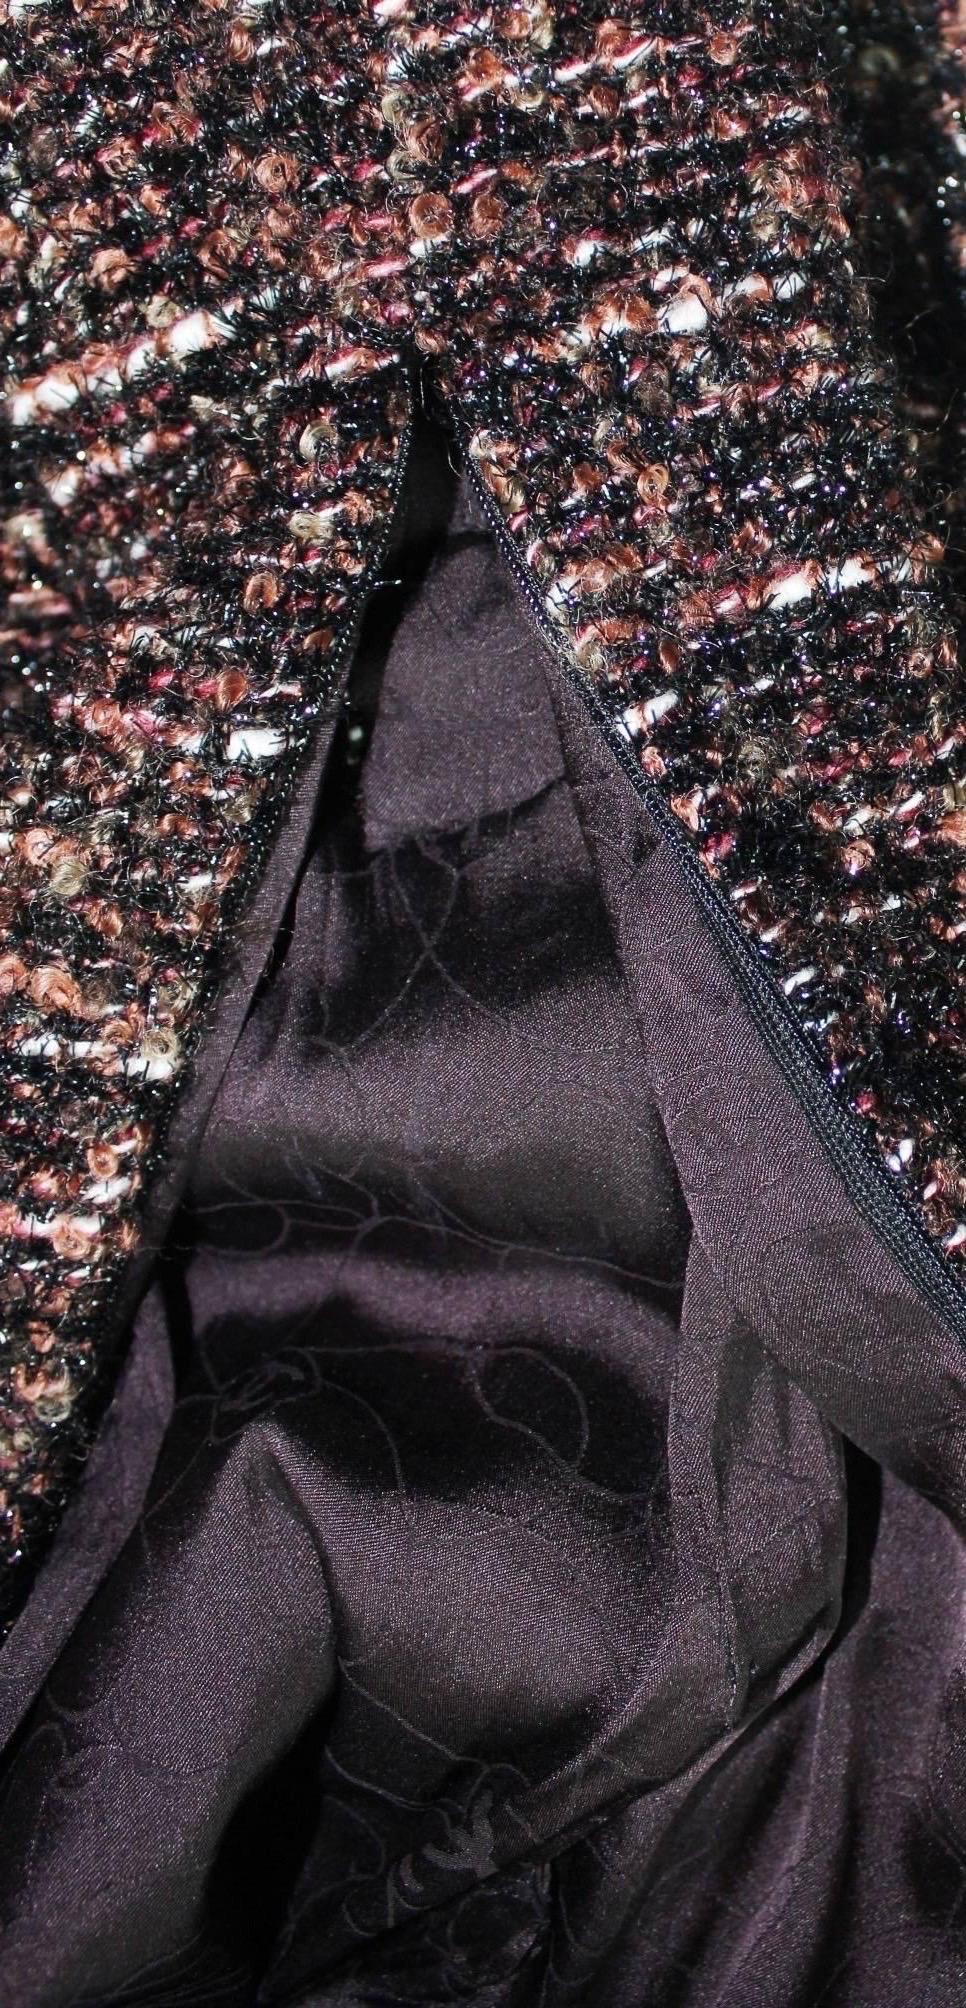 UNWORN Chanel Metallic Fantasy Tweed Sequin Trim Jacket Blazer Skirt Suit 38-40 For Sale 4